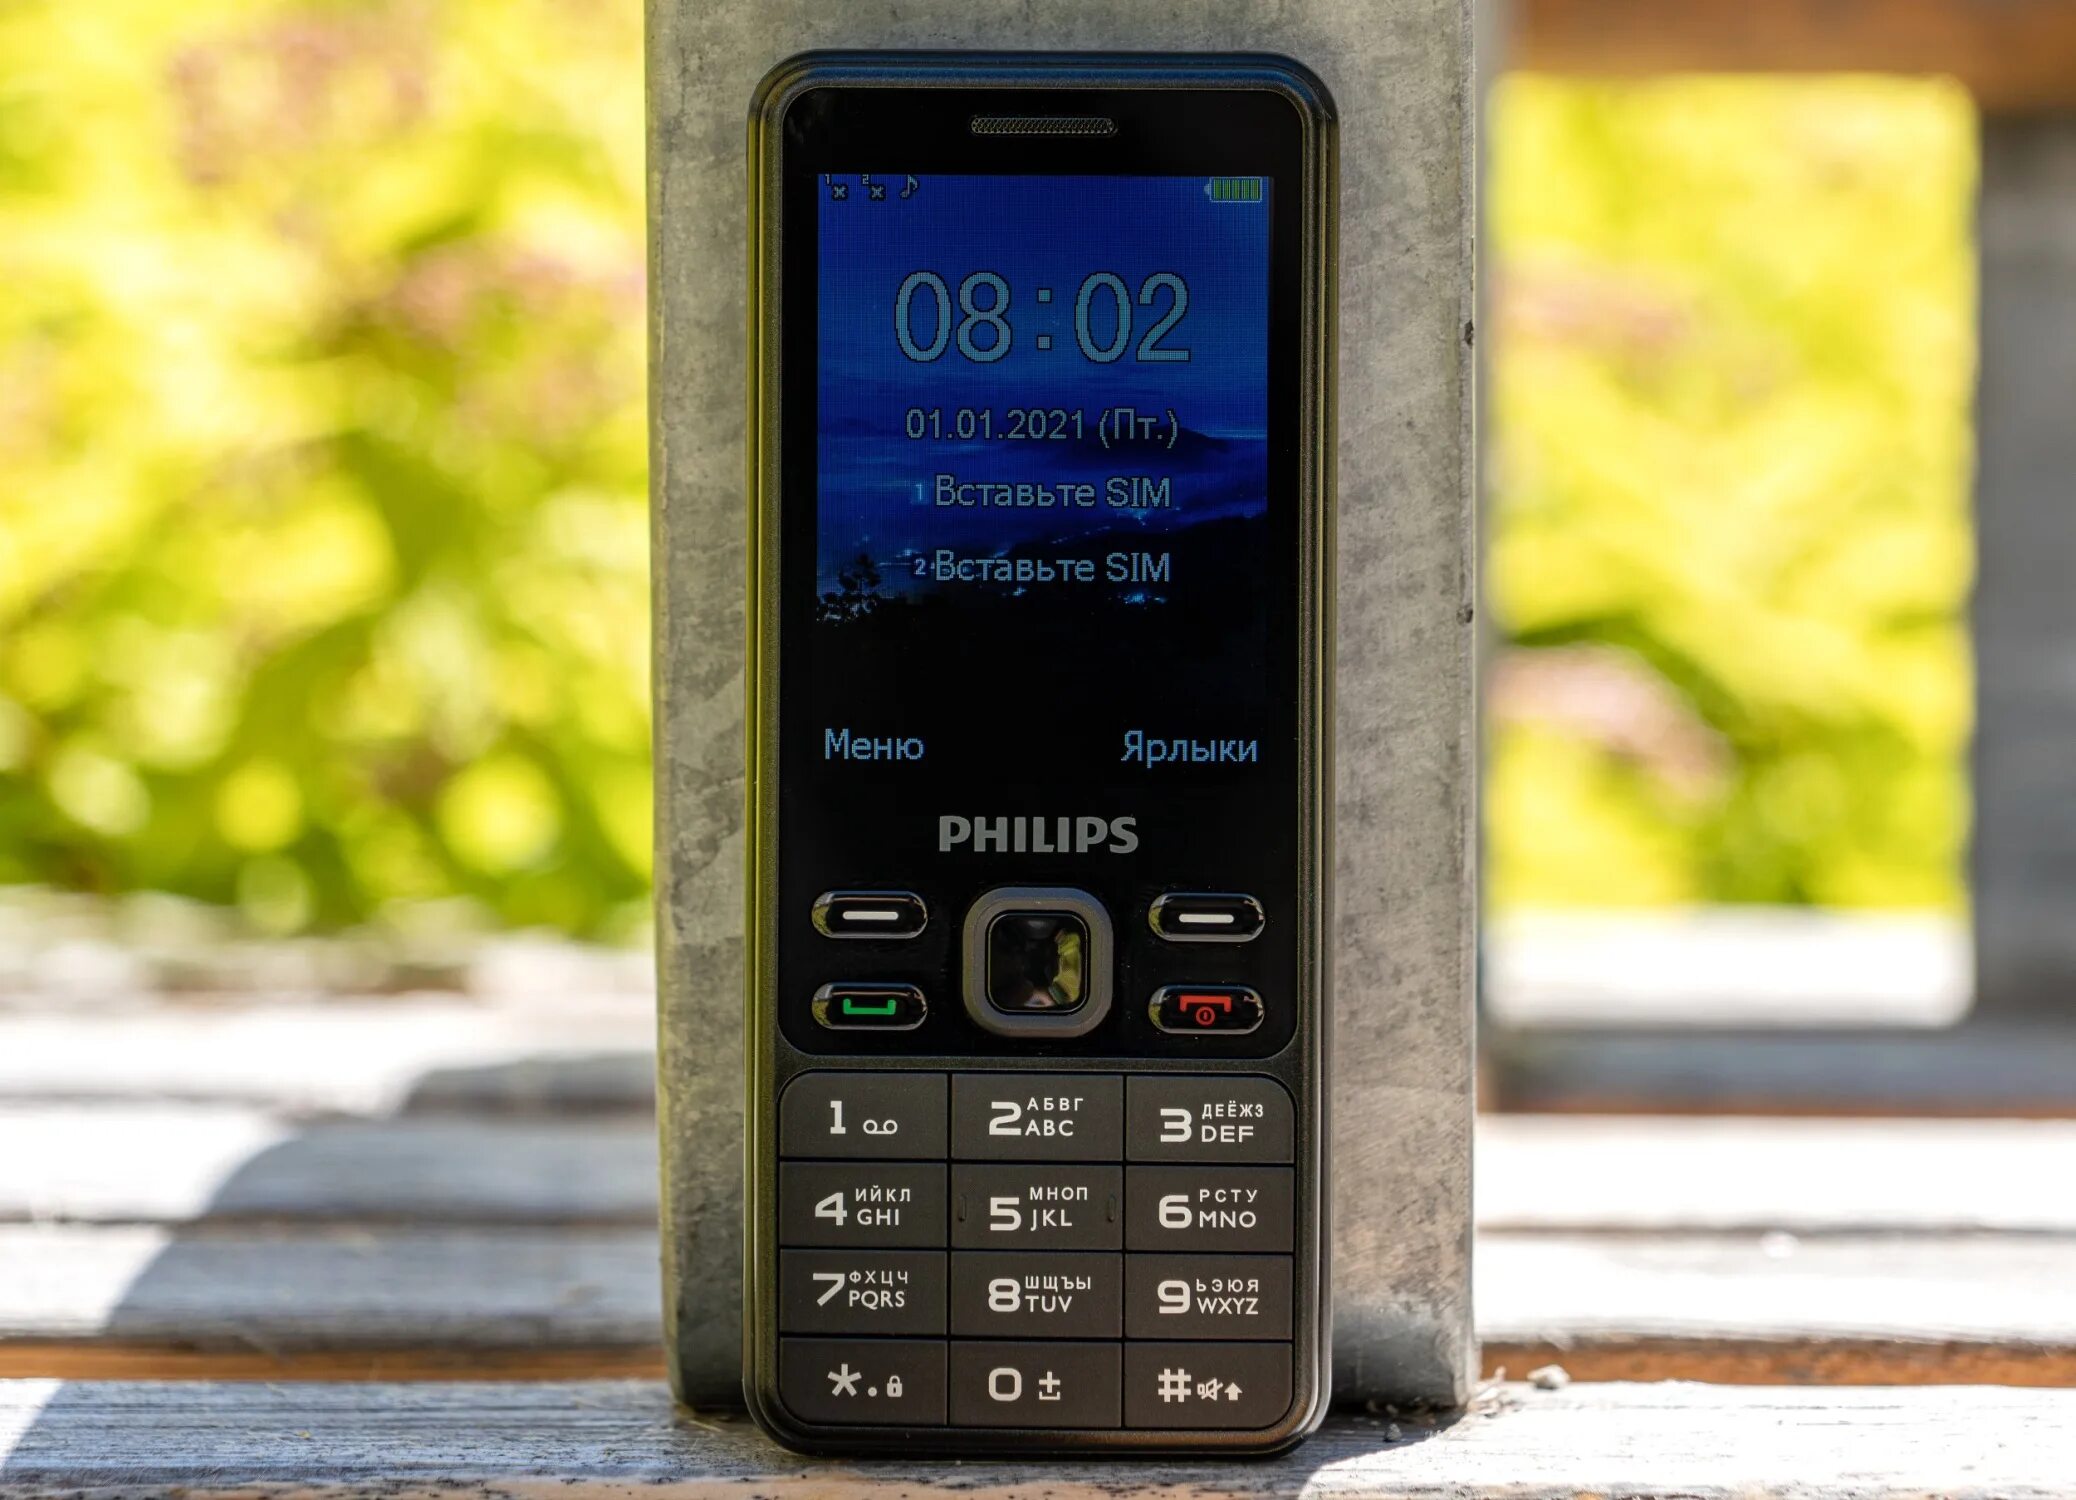 Телефон Филипс кнопочный. Philips телефон кнопочный 2022. Телефон Филипс с большими кнопками. Пароль для сброса настроек Филипс кнопочный. Филипс 185 телефон